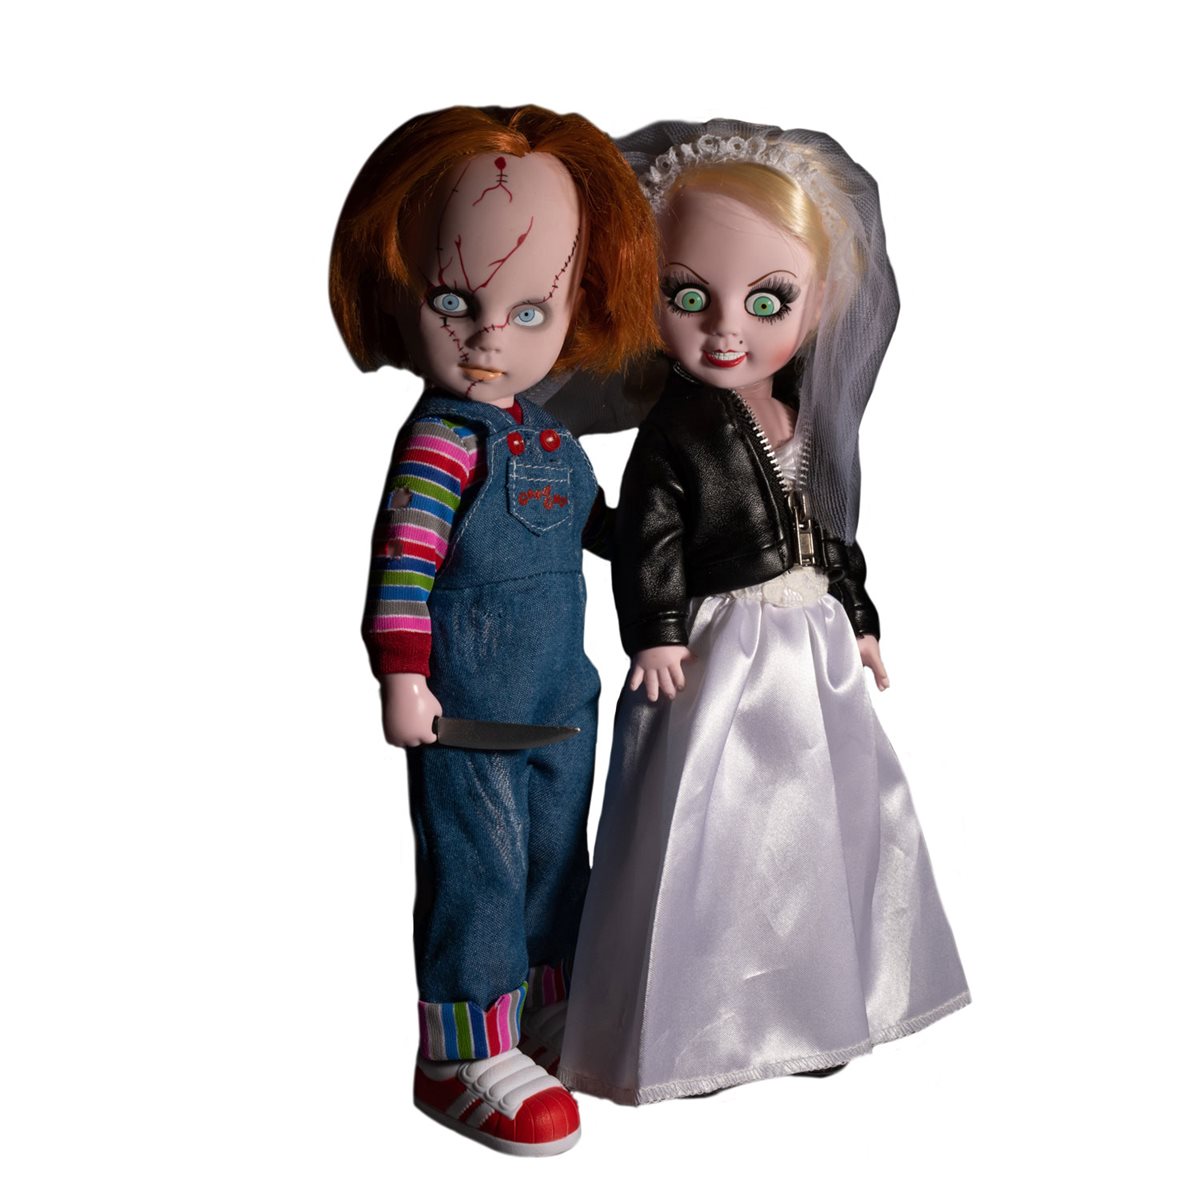 ックスセッ Mezco Ldd Presents Chucky And Tiffany Figures Box Set 20210515143653 00006 Uhalプロショップ2